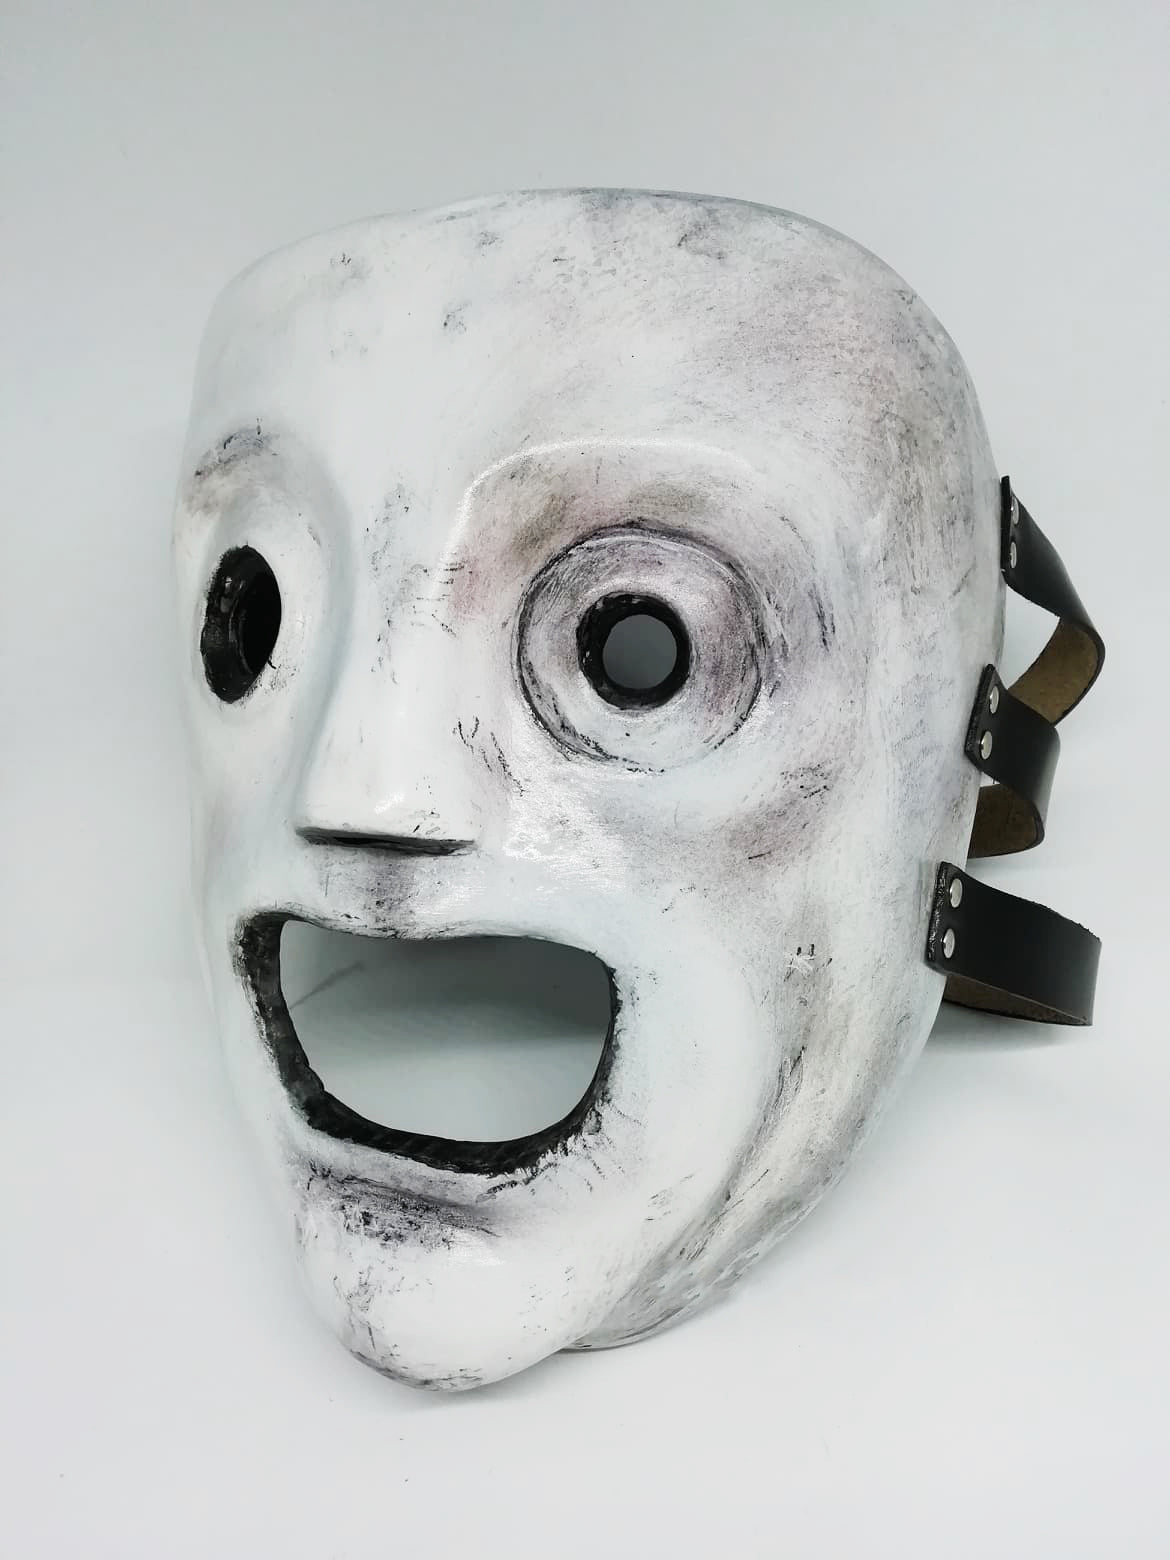 Slipknot Mask